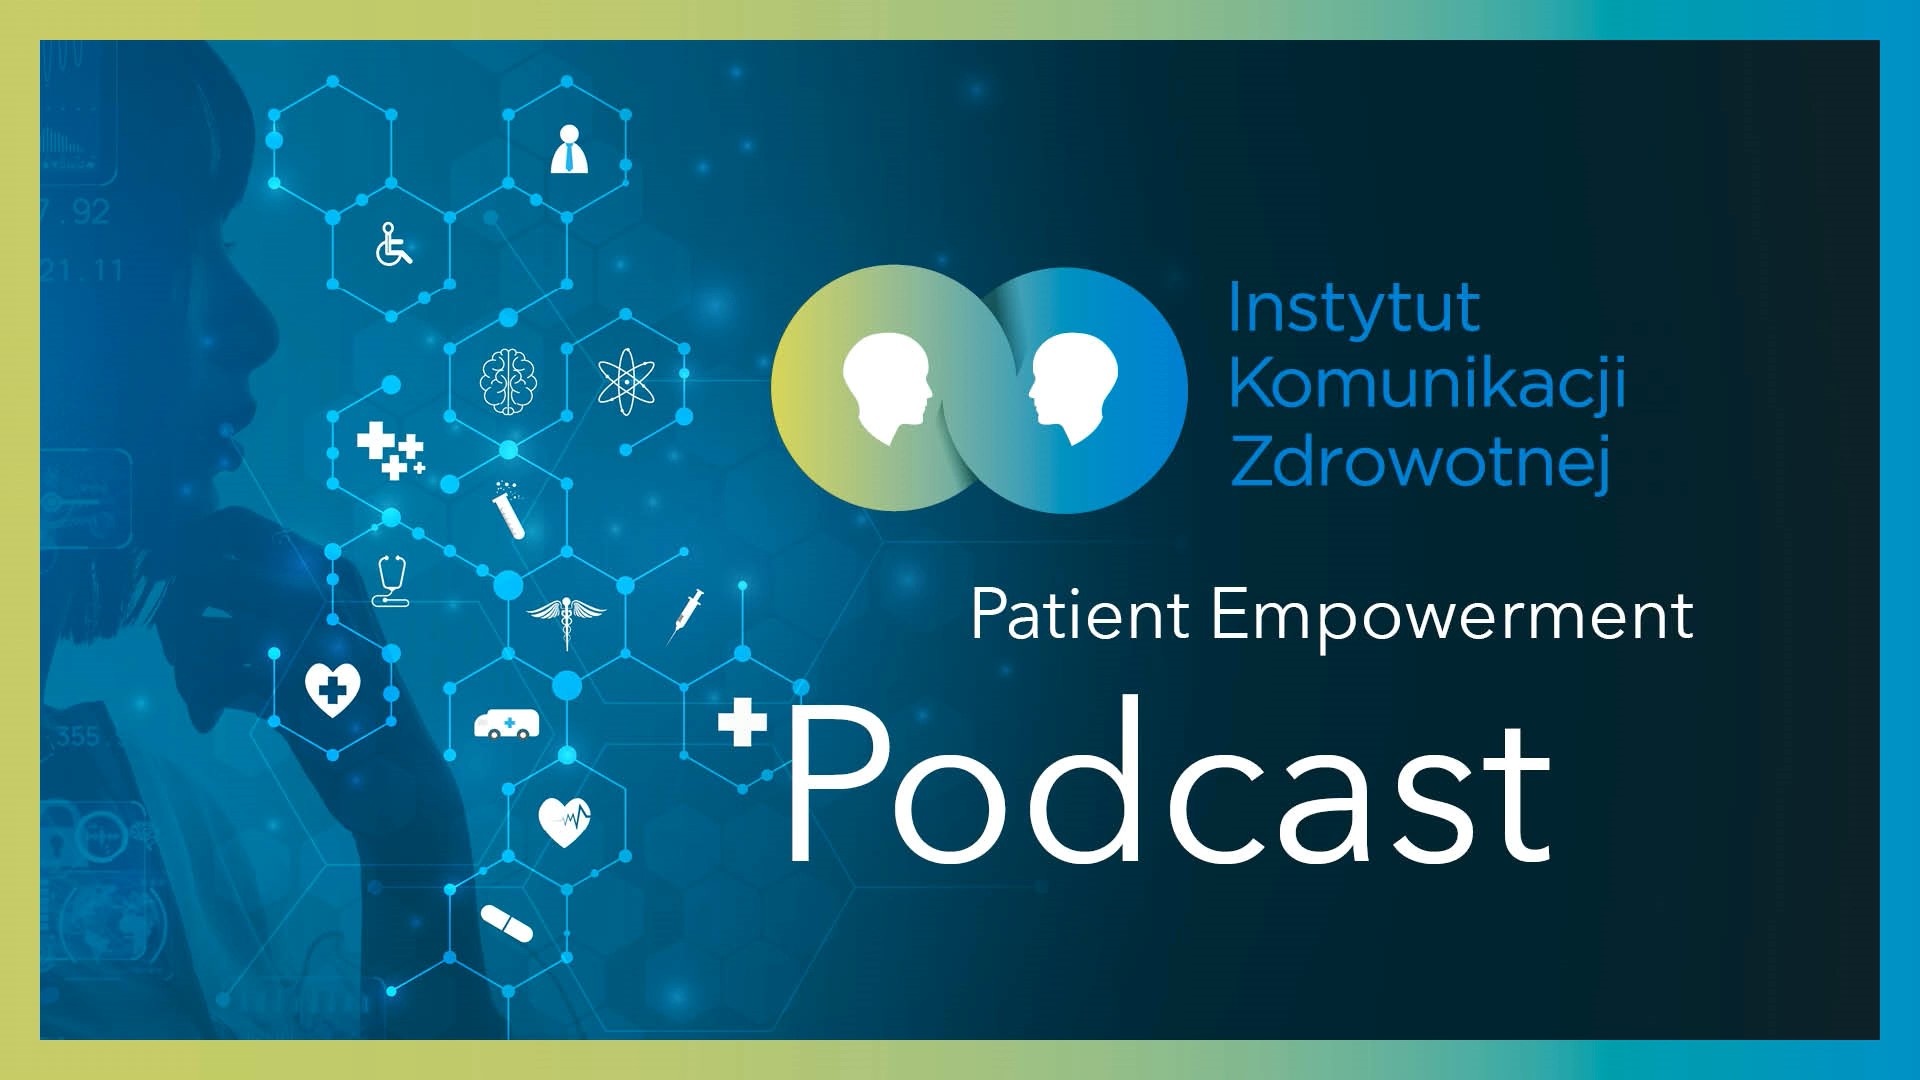 Patient Empowerment Podcast: Maria Libura i Przemysław Marszałek